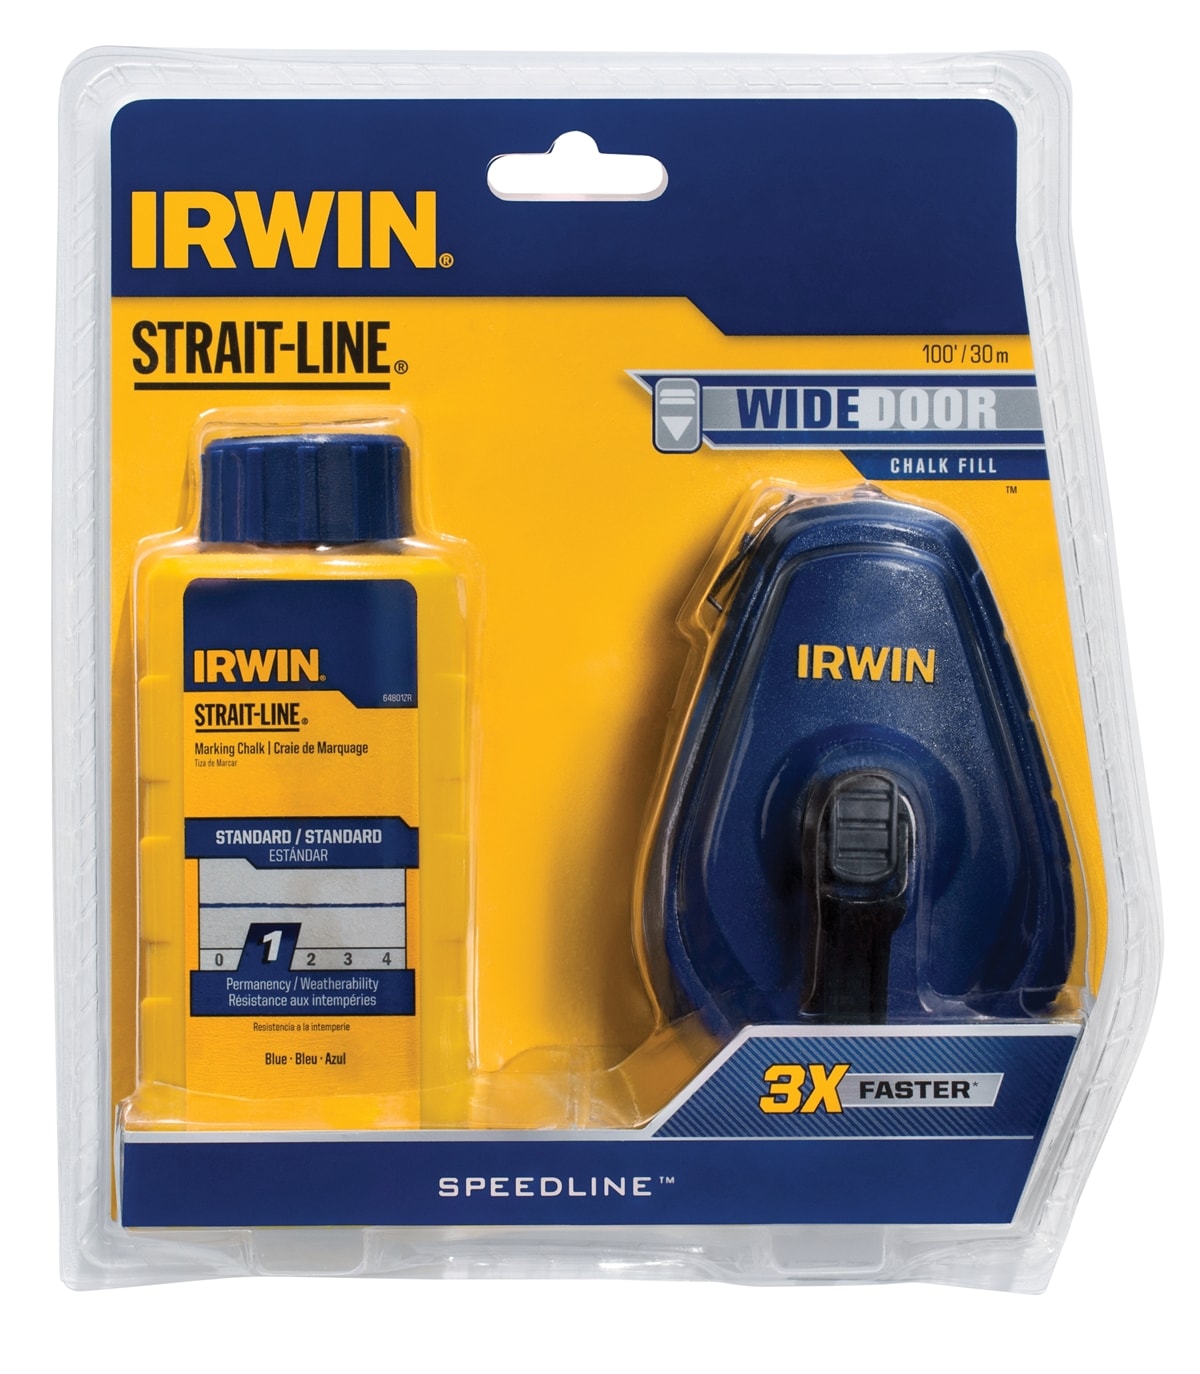 IRWIN STRAIT-LINE SPEEDLINE 3:1 100-ft Chalk Reel at